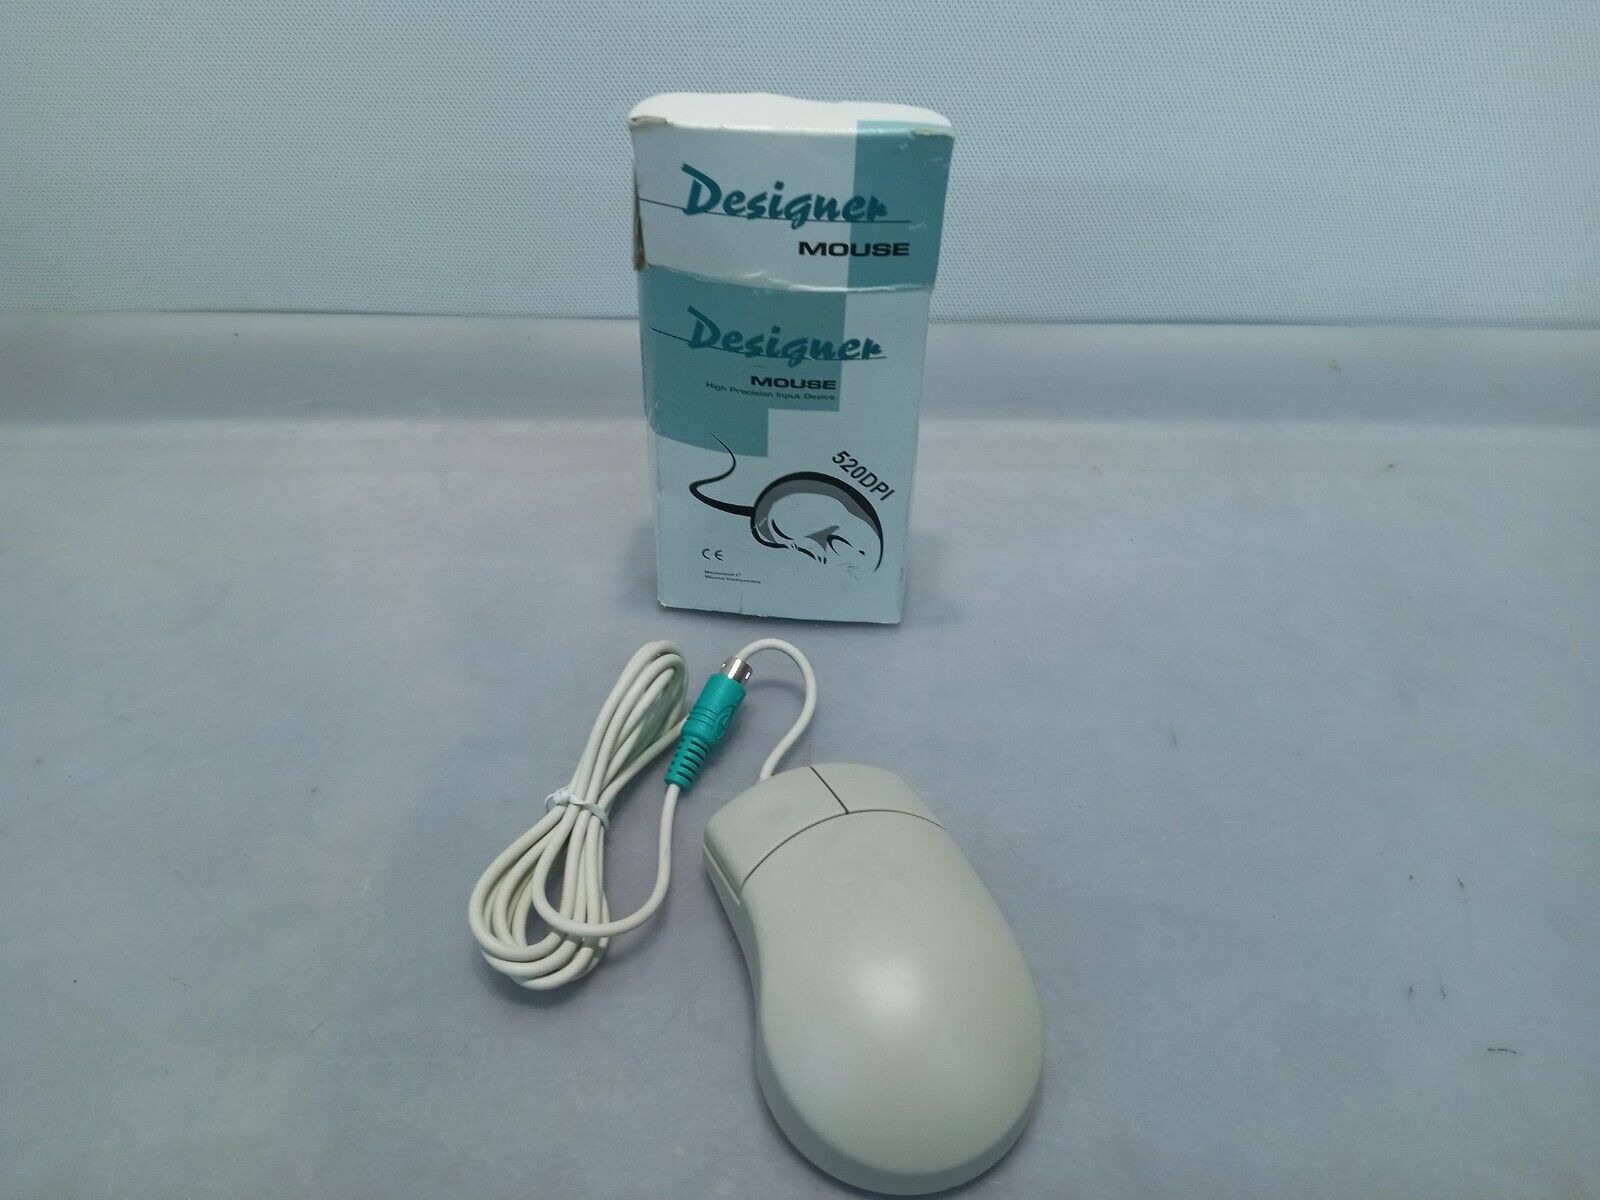 Vintage NOS Dyna Point M2DE-42P Designer Mouse PS/2 520DPI 2 button H1025 NOB